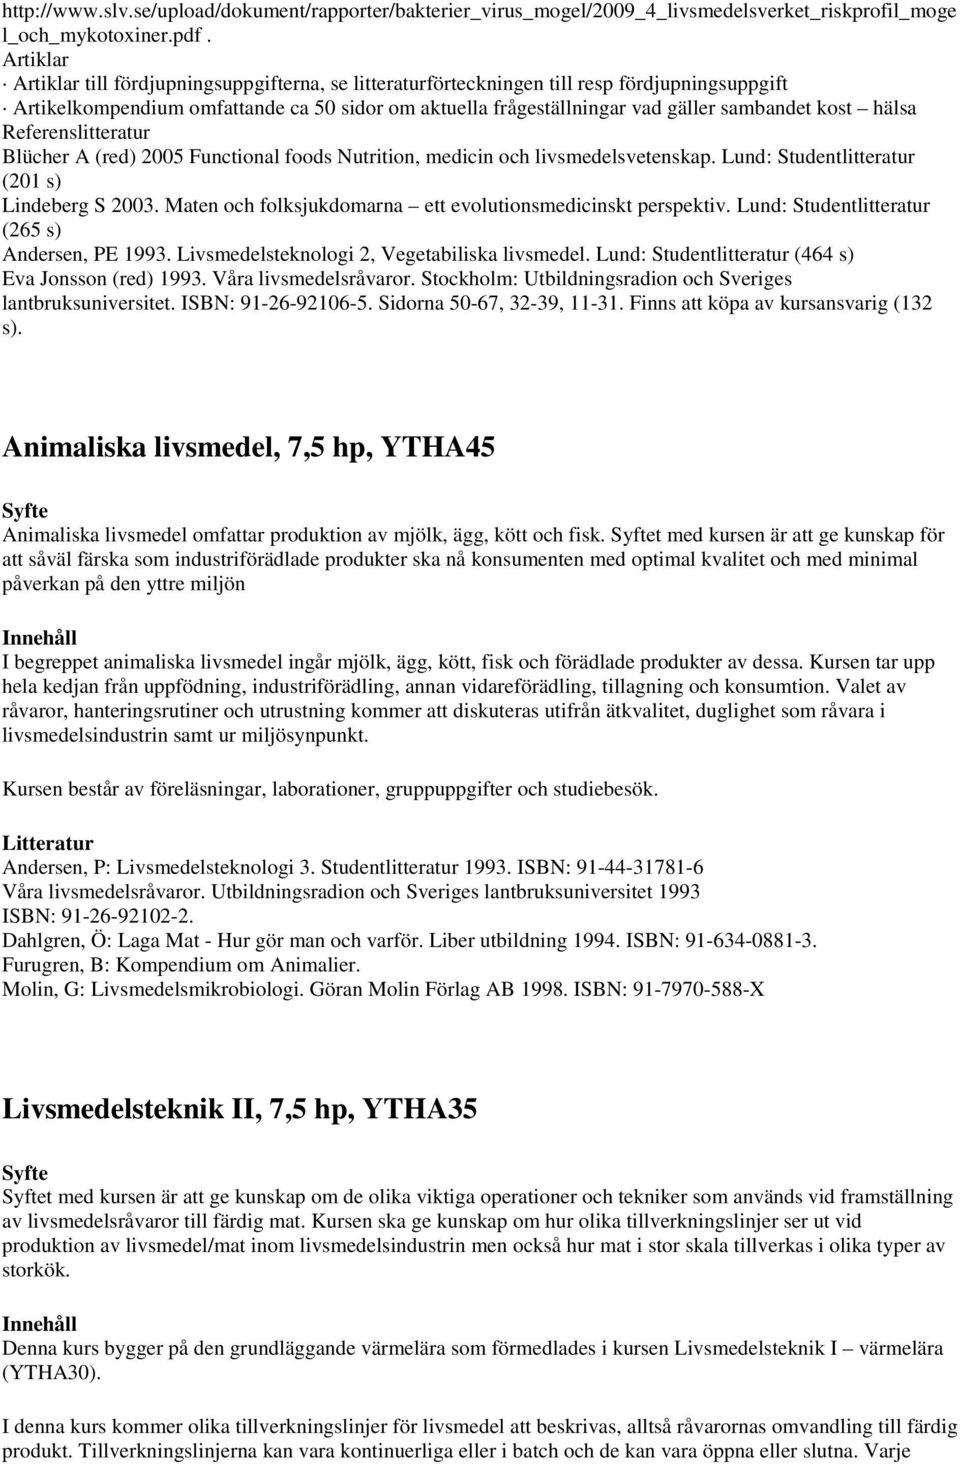 kost hälsa Referenslitteratur Blücher A (red) 2005 Functional foods Nutrition, medicin och livsmedelsvetenskap. Lund: Studentlitteratur (201 s) Lindeberg S 2003.